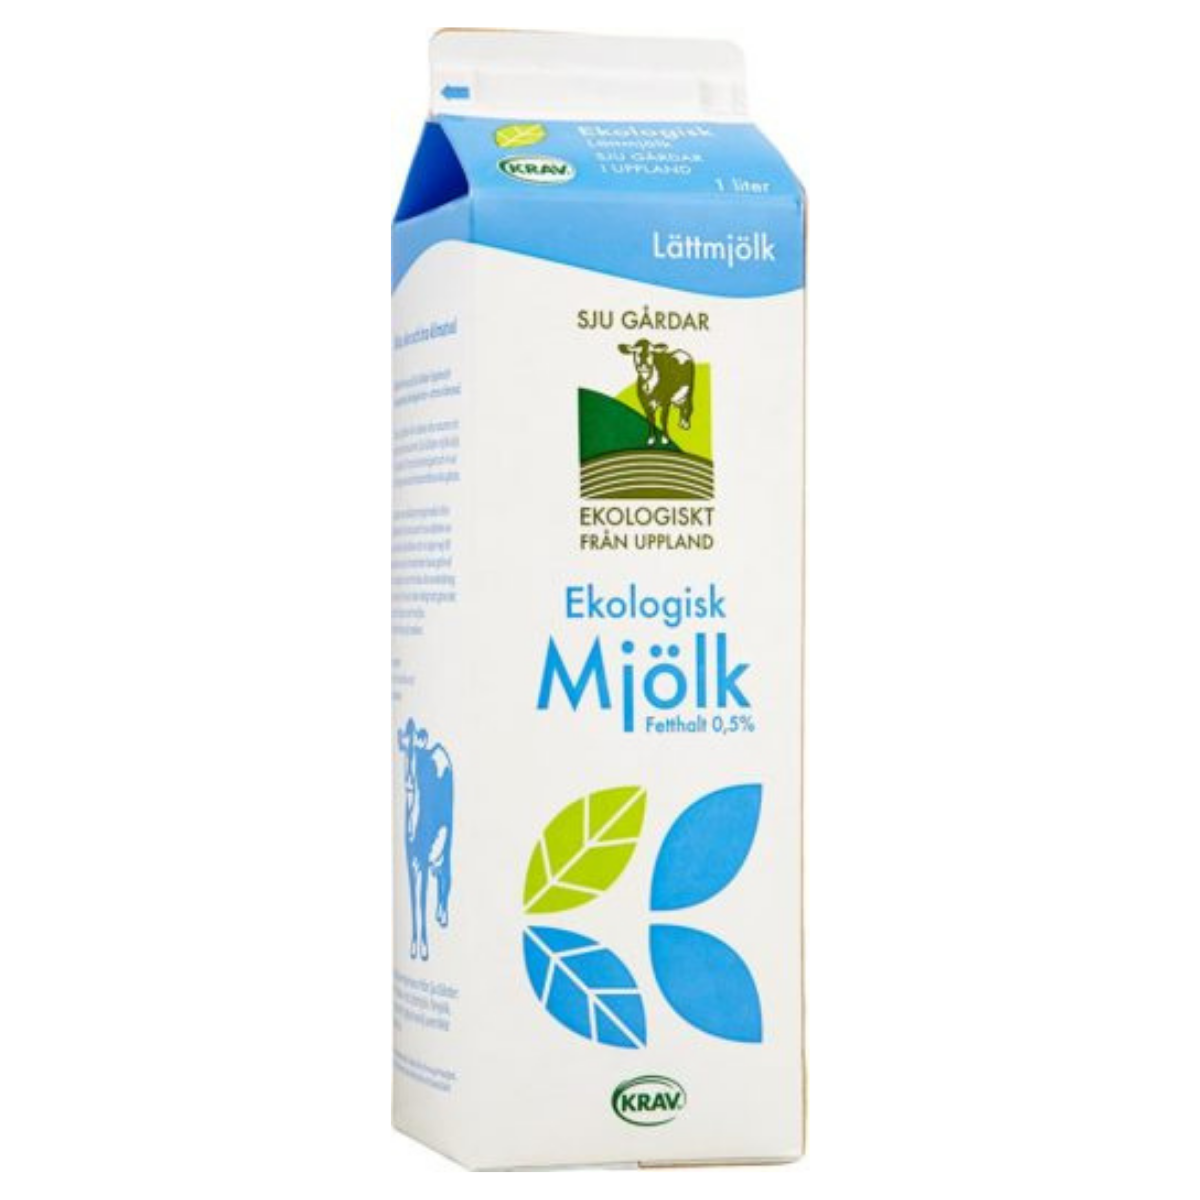 Sju Gårdar's Ekologisk lättmjölk 0,5%'